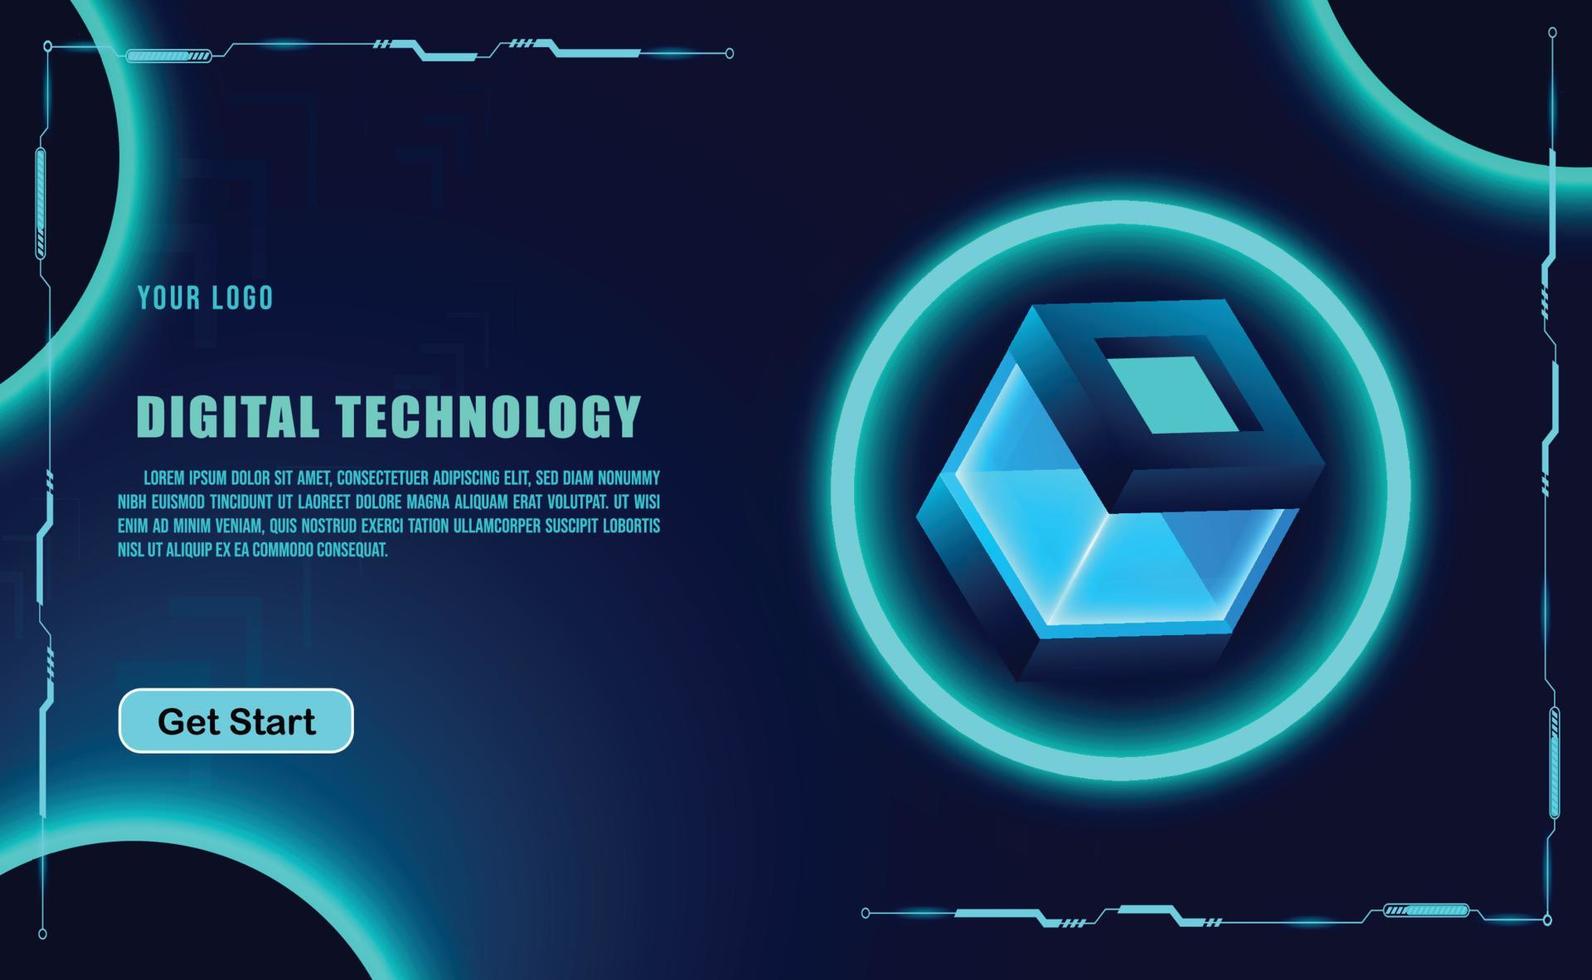 technologiekonzept für web-banner-vorlage oder broschüre, blaue farbe. vektor